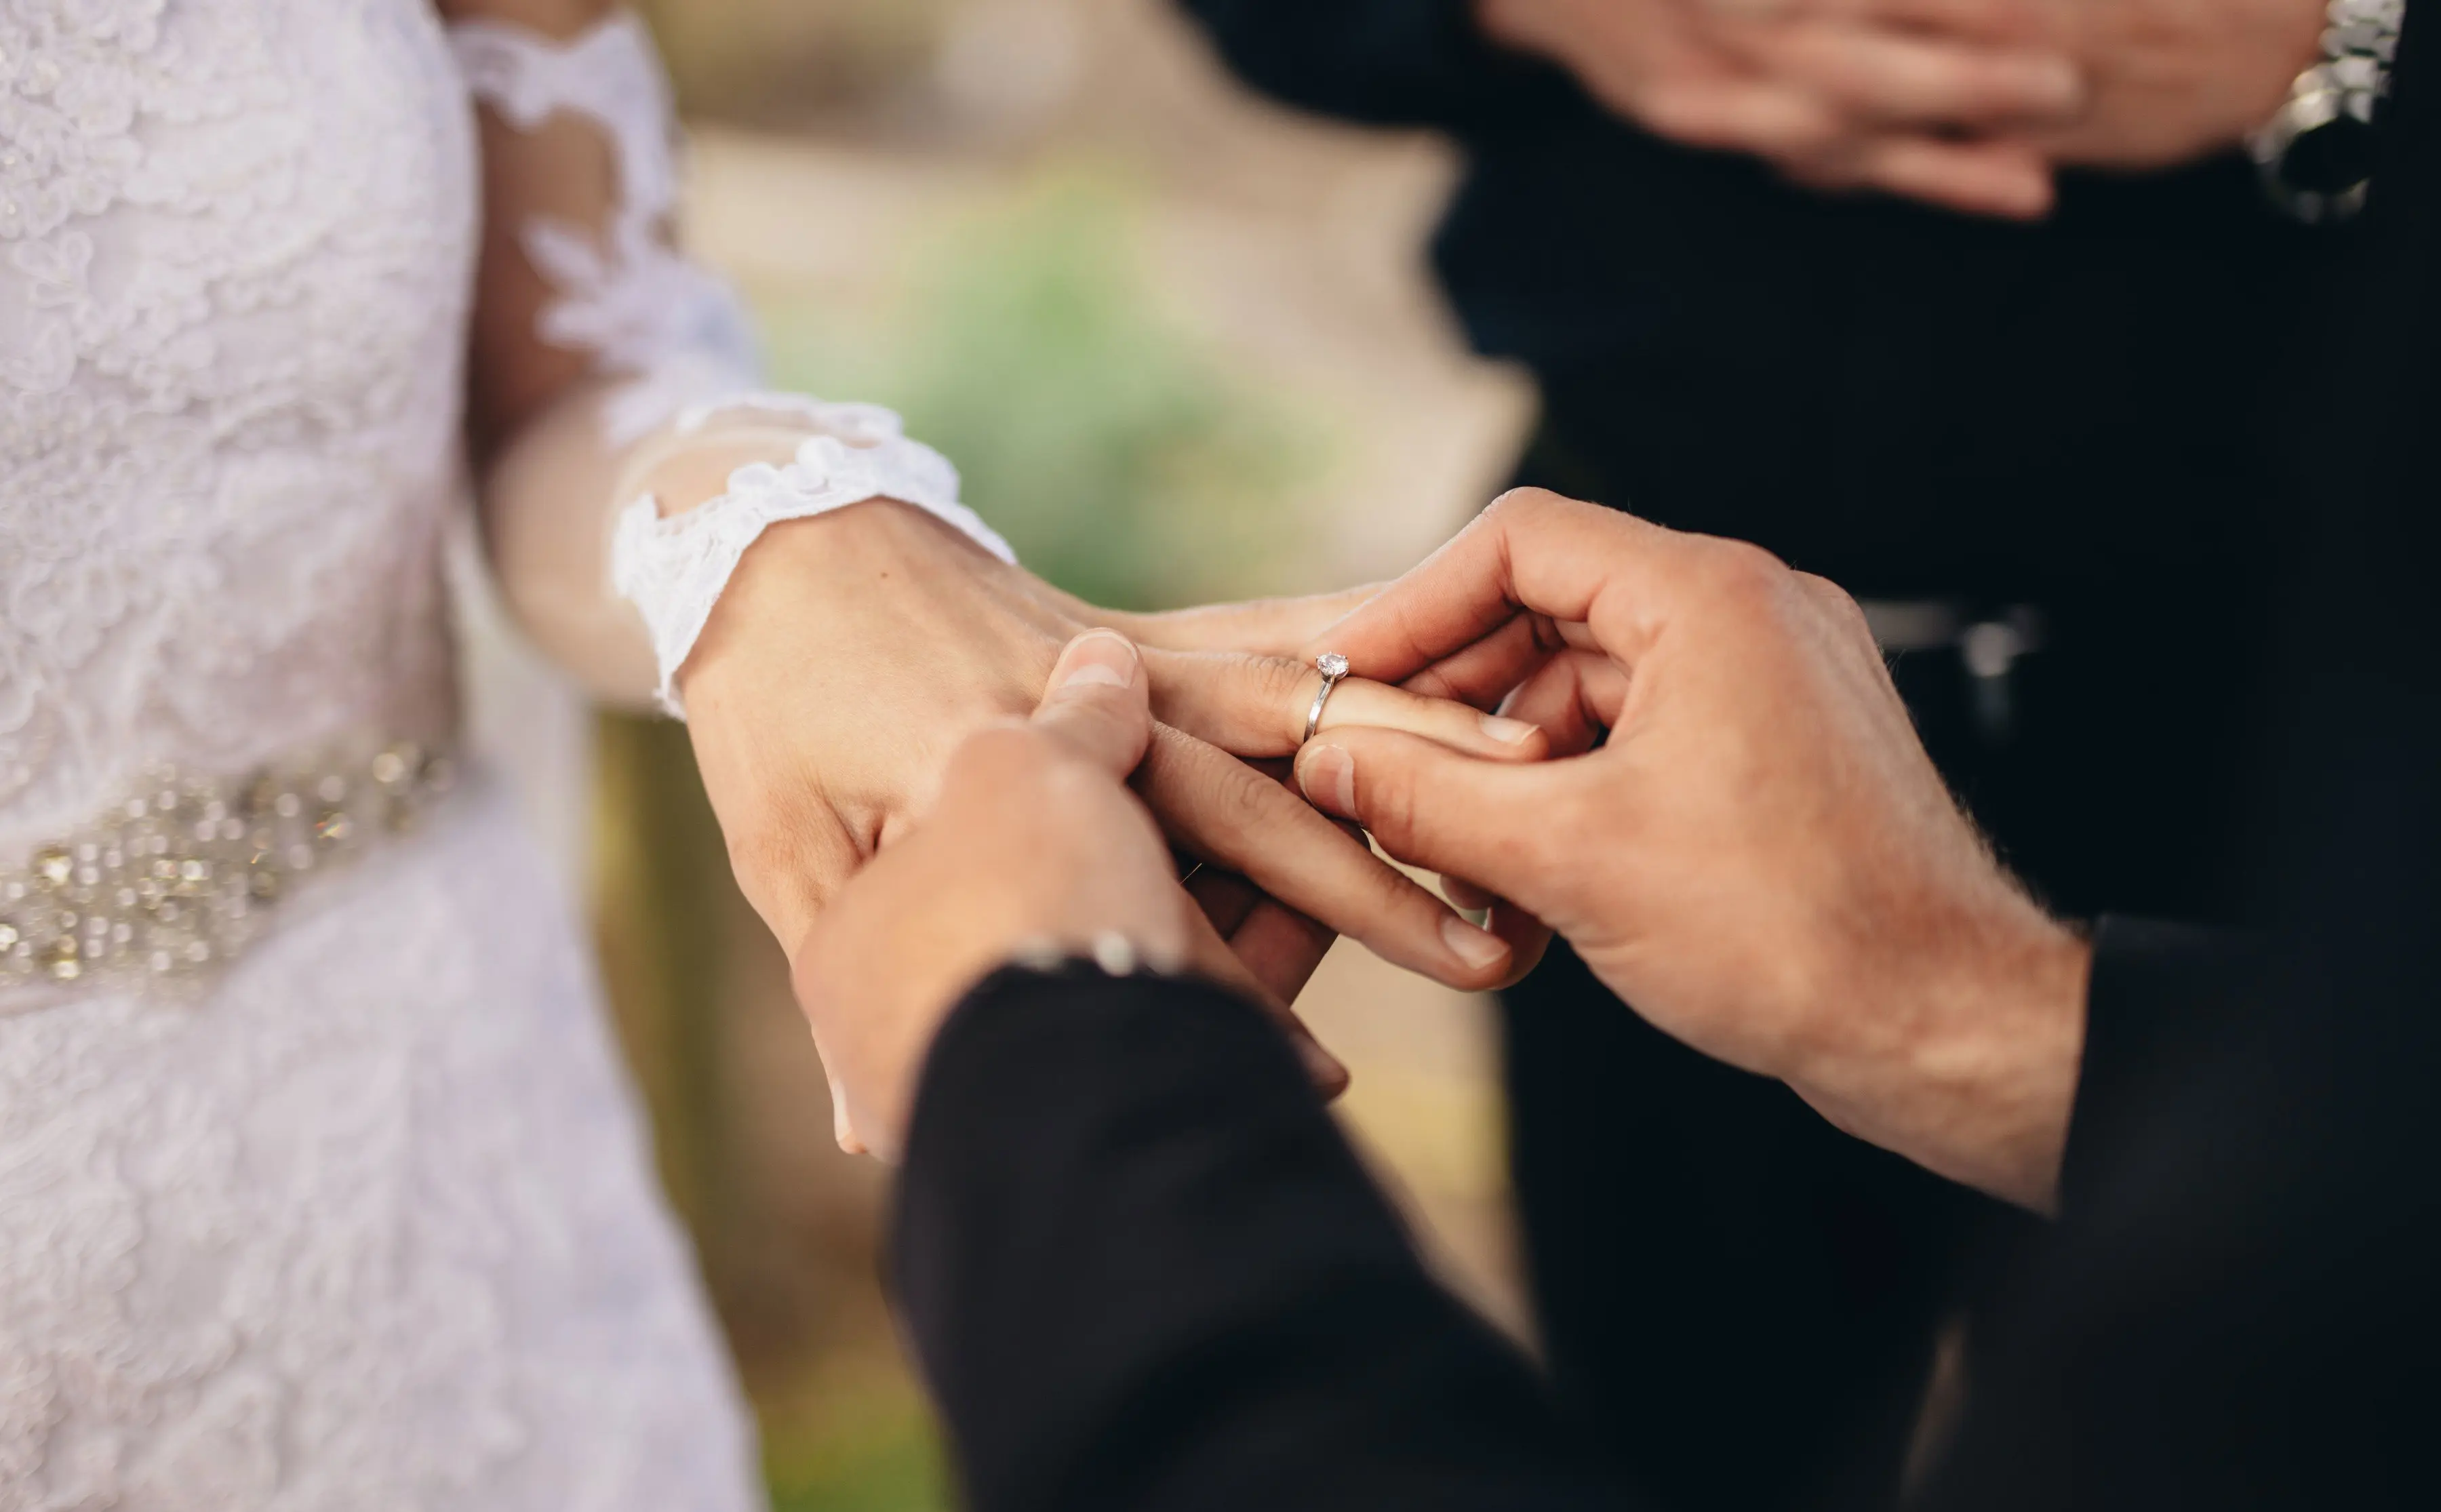 ازدواج اجبار است یا یک پروژه مشترک؟